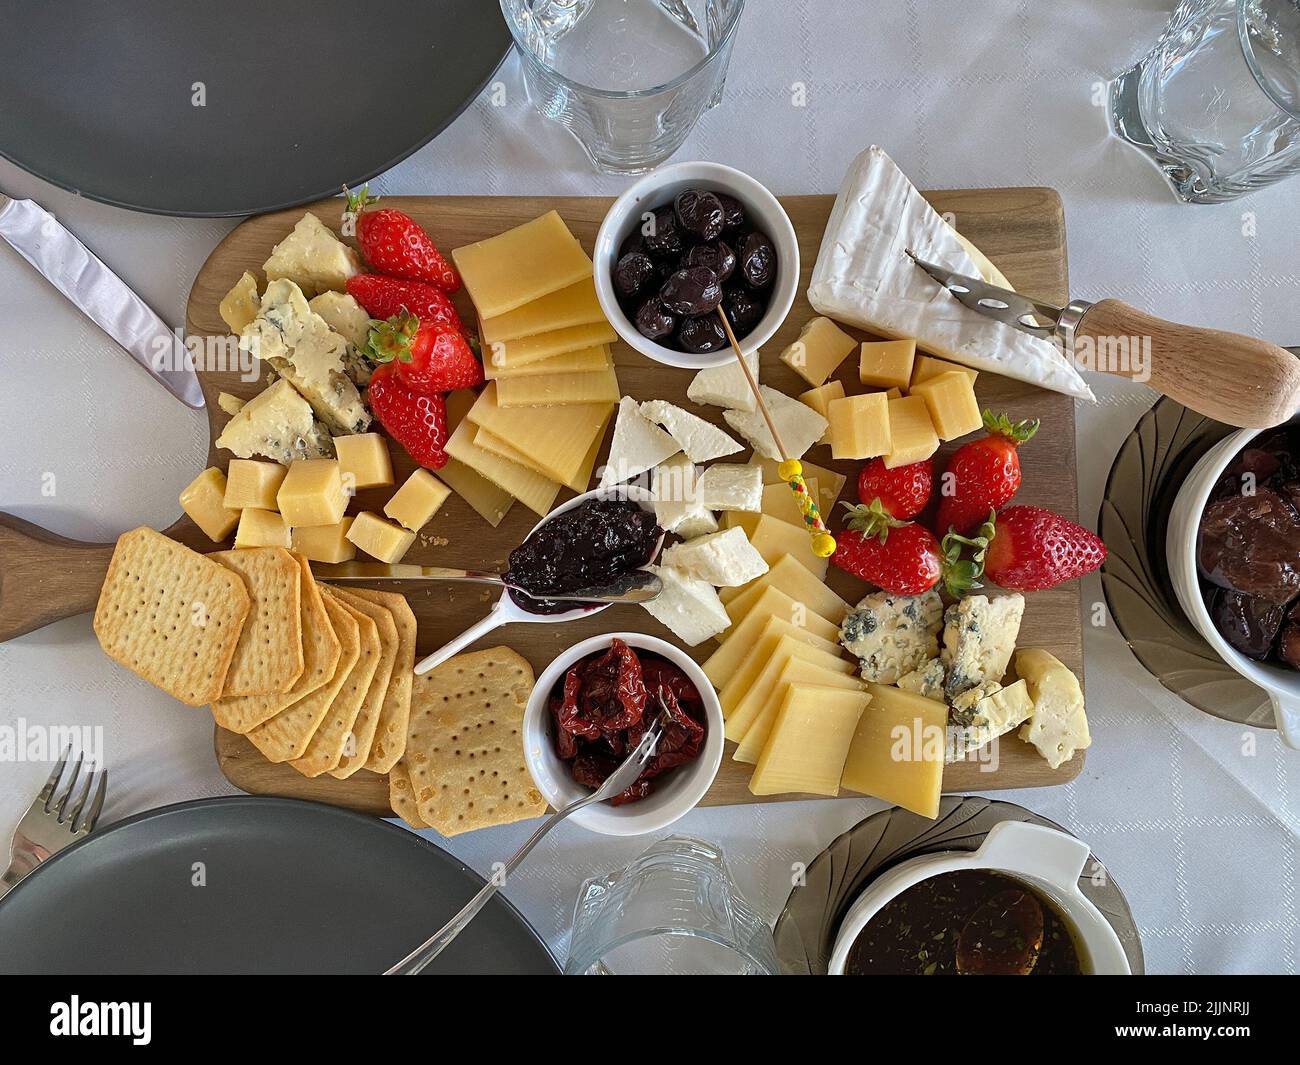 Piatto di formaggi con camembert, brie, dor blue, fragole, pomodori secchi, olive su un tavolo di legno, vista dall'alto. Foto Stock